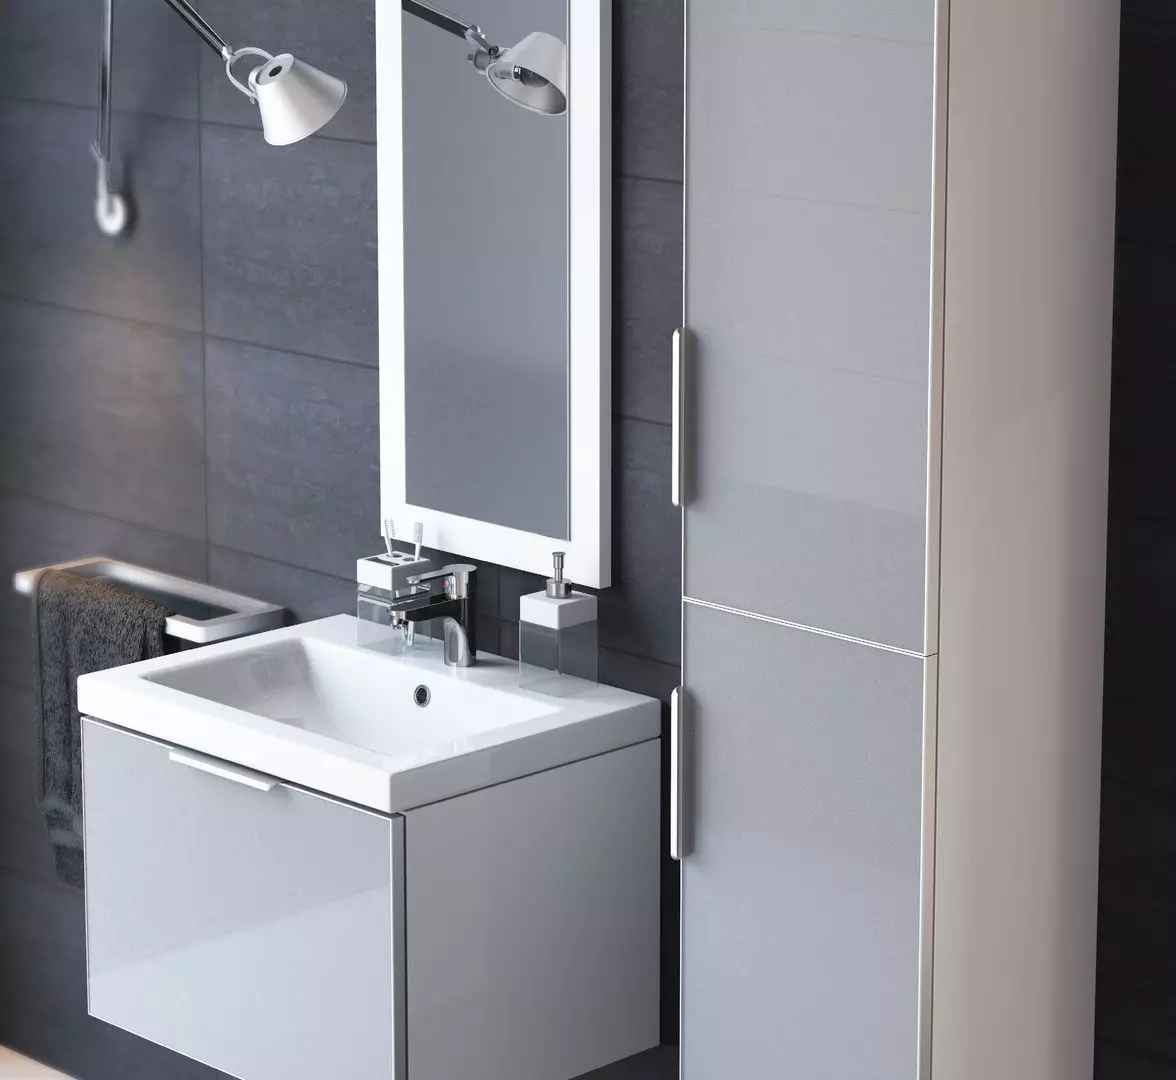 Suspenderad diskbänk i badrummet: Monterade tvättställ 50-60 cm med konsol och tvättning utan en skärare 55-80 cm, andra modeller 21424_57